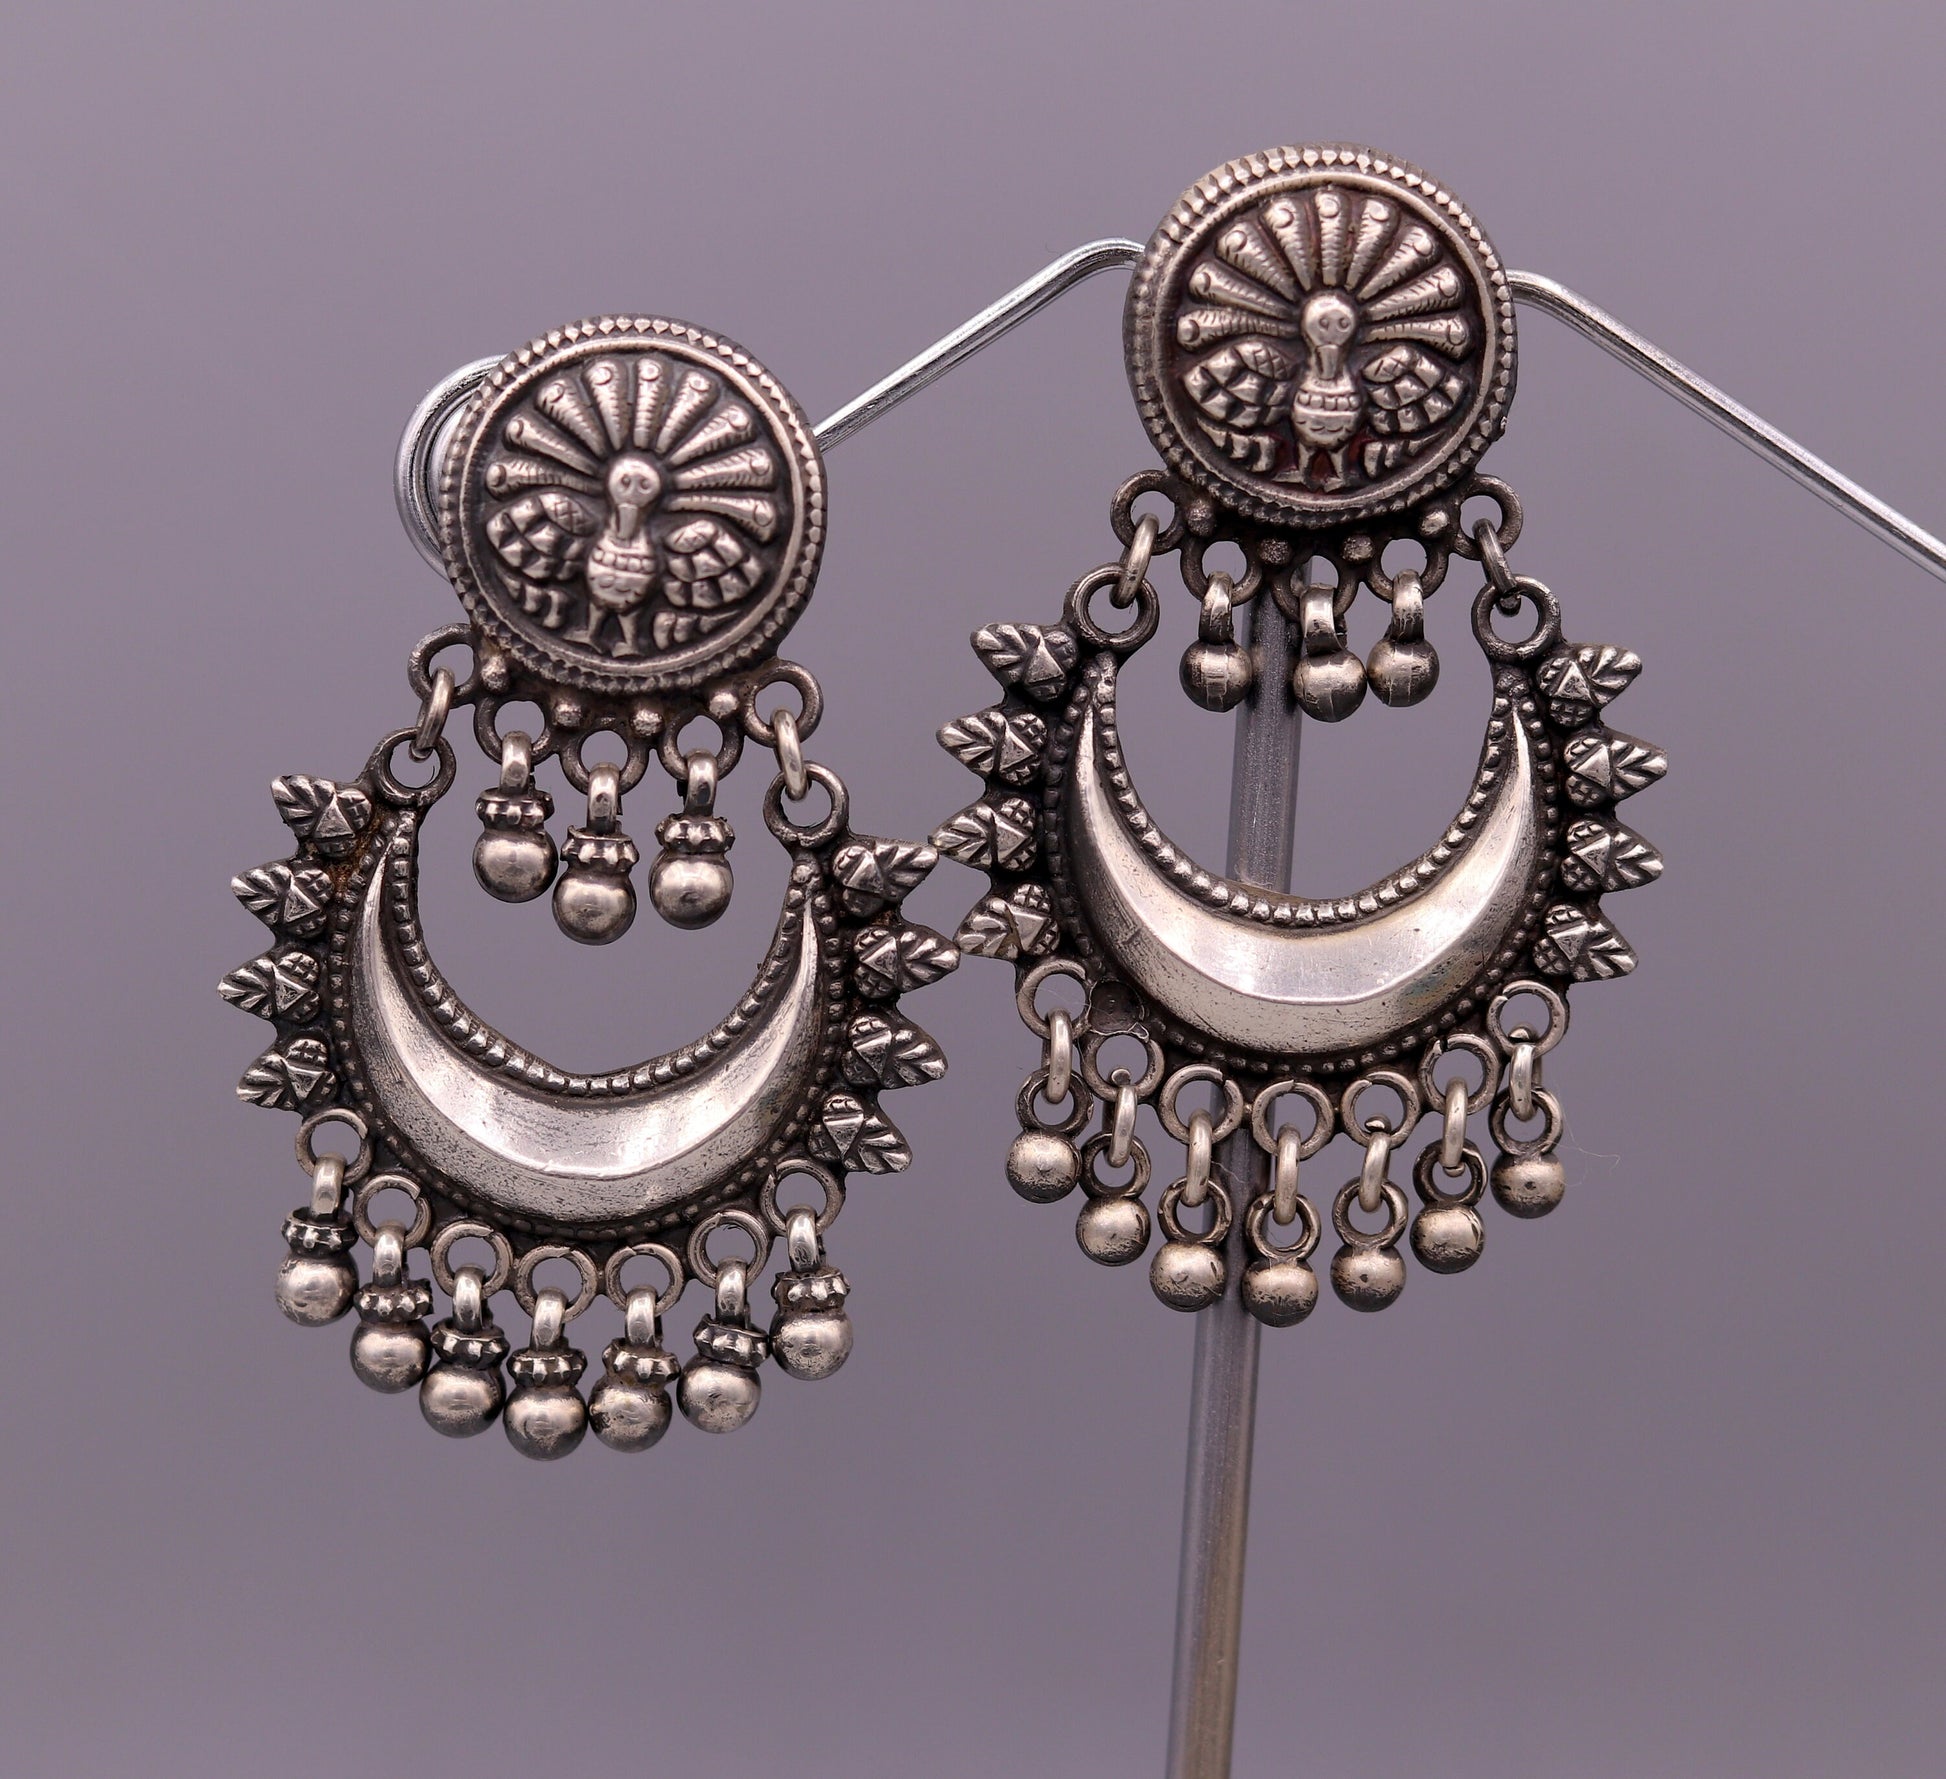 Oxidized 925 sterling silver tribal Earrings,half moon earrings, stud earring hanging bells, drop dangle jewelry wedding party jewelry s380 - TRIBAL ORNAMENTS